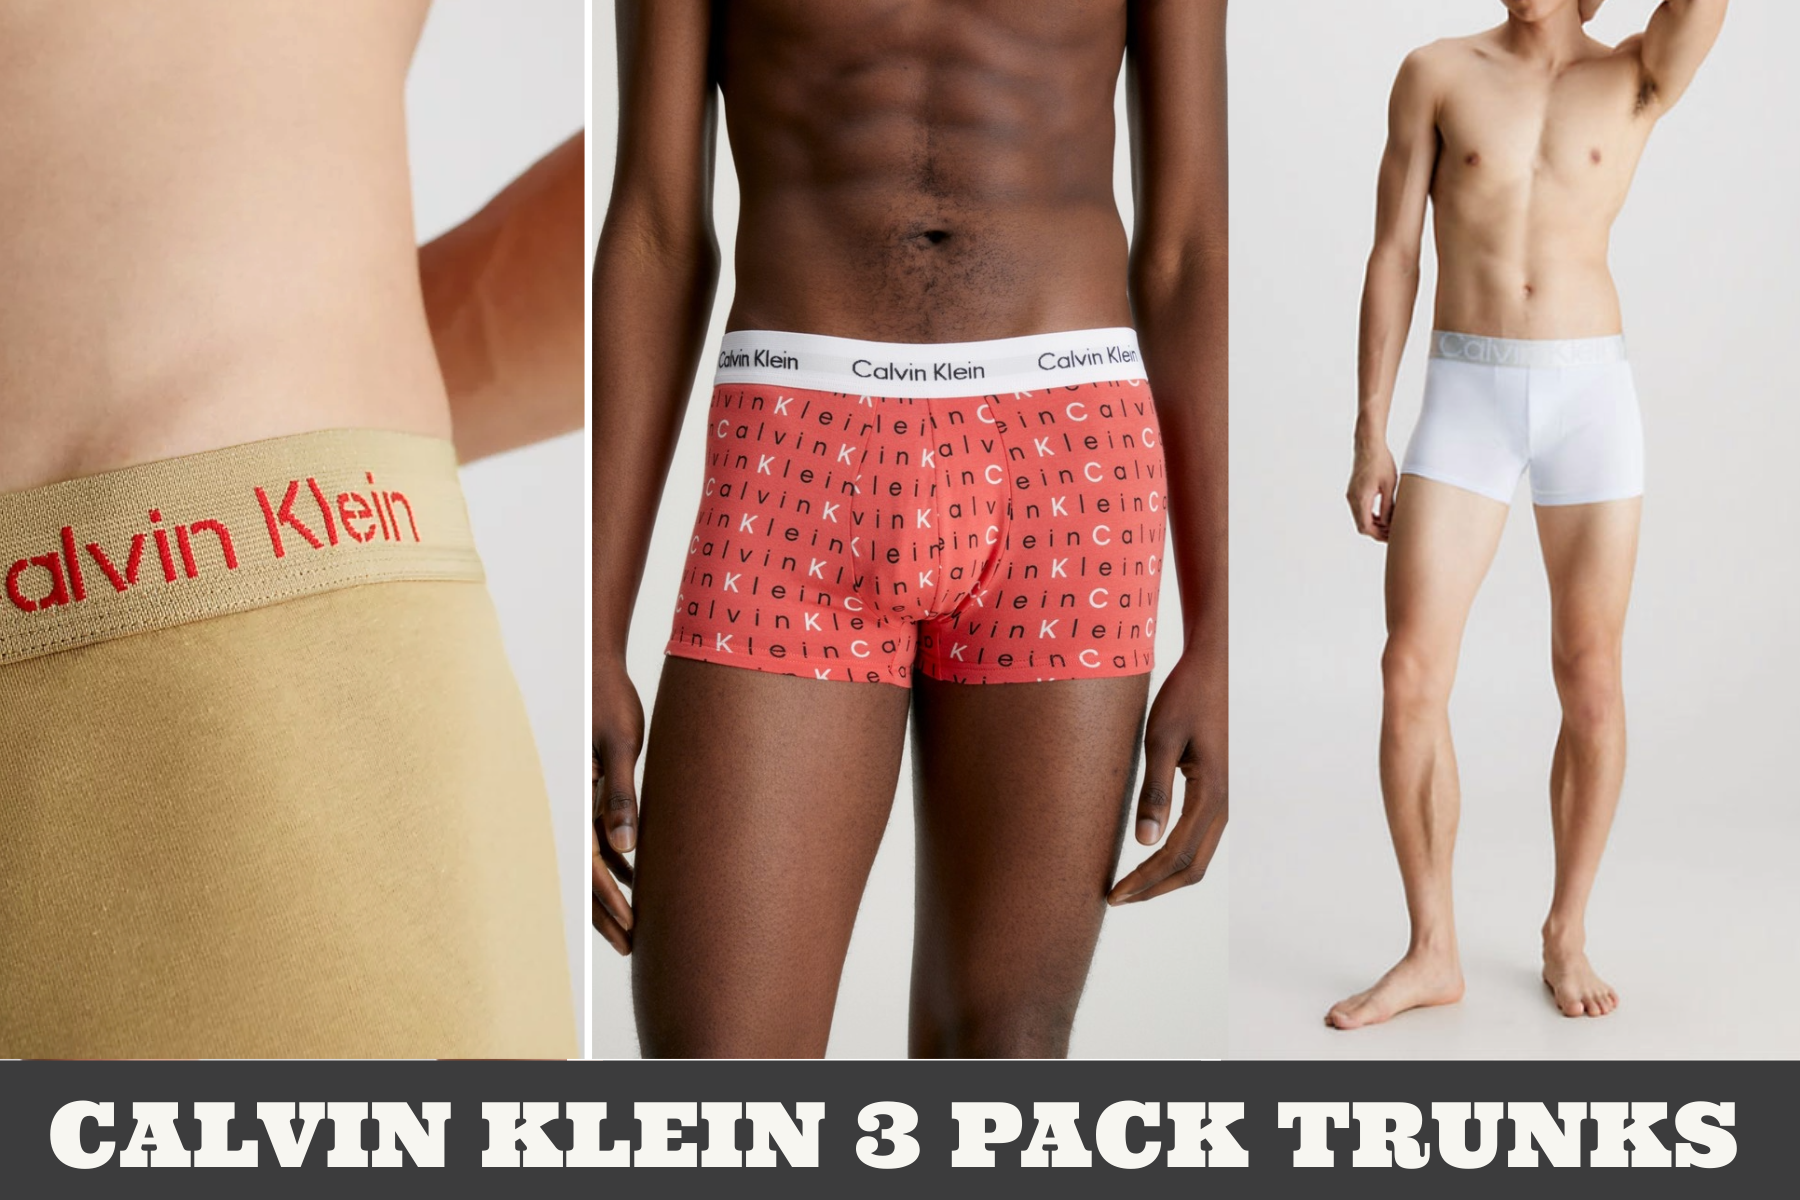 2 Pack Mens Jack & Jones Designer Boxer Shorts Boxers Underwear Trunks Gift  Set